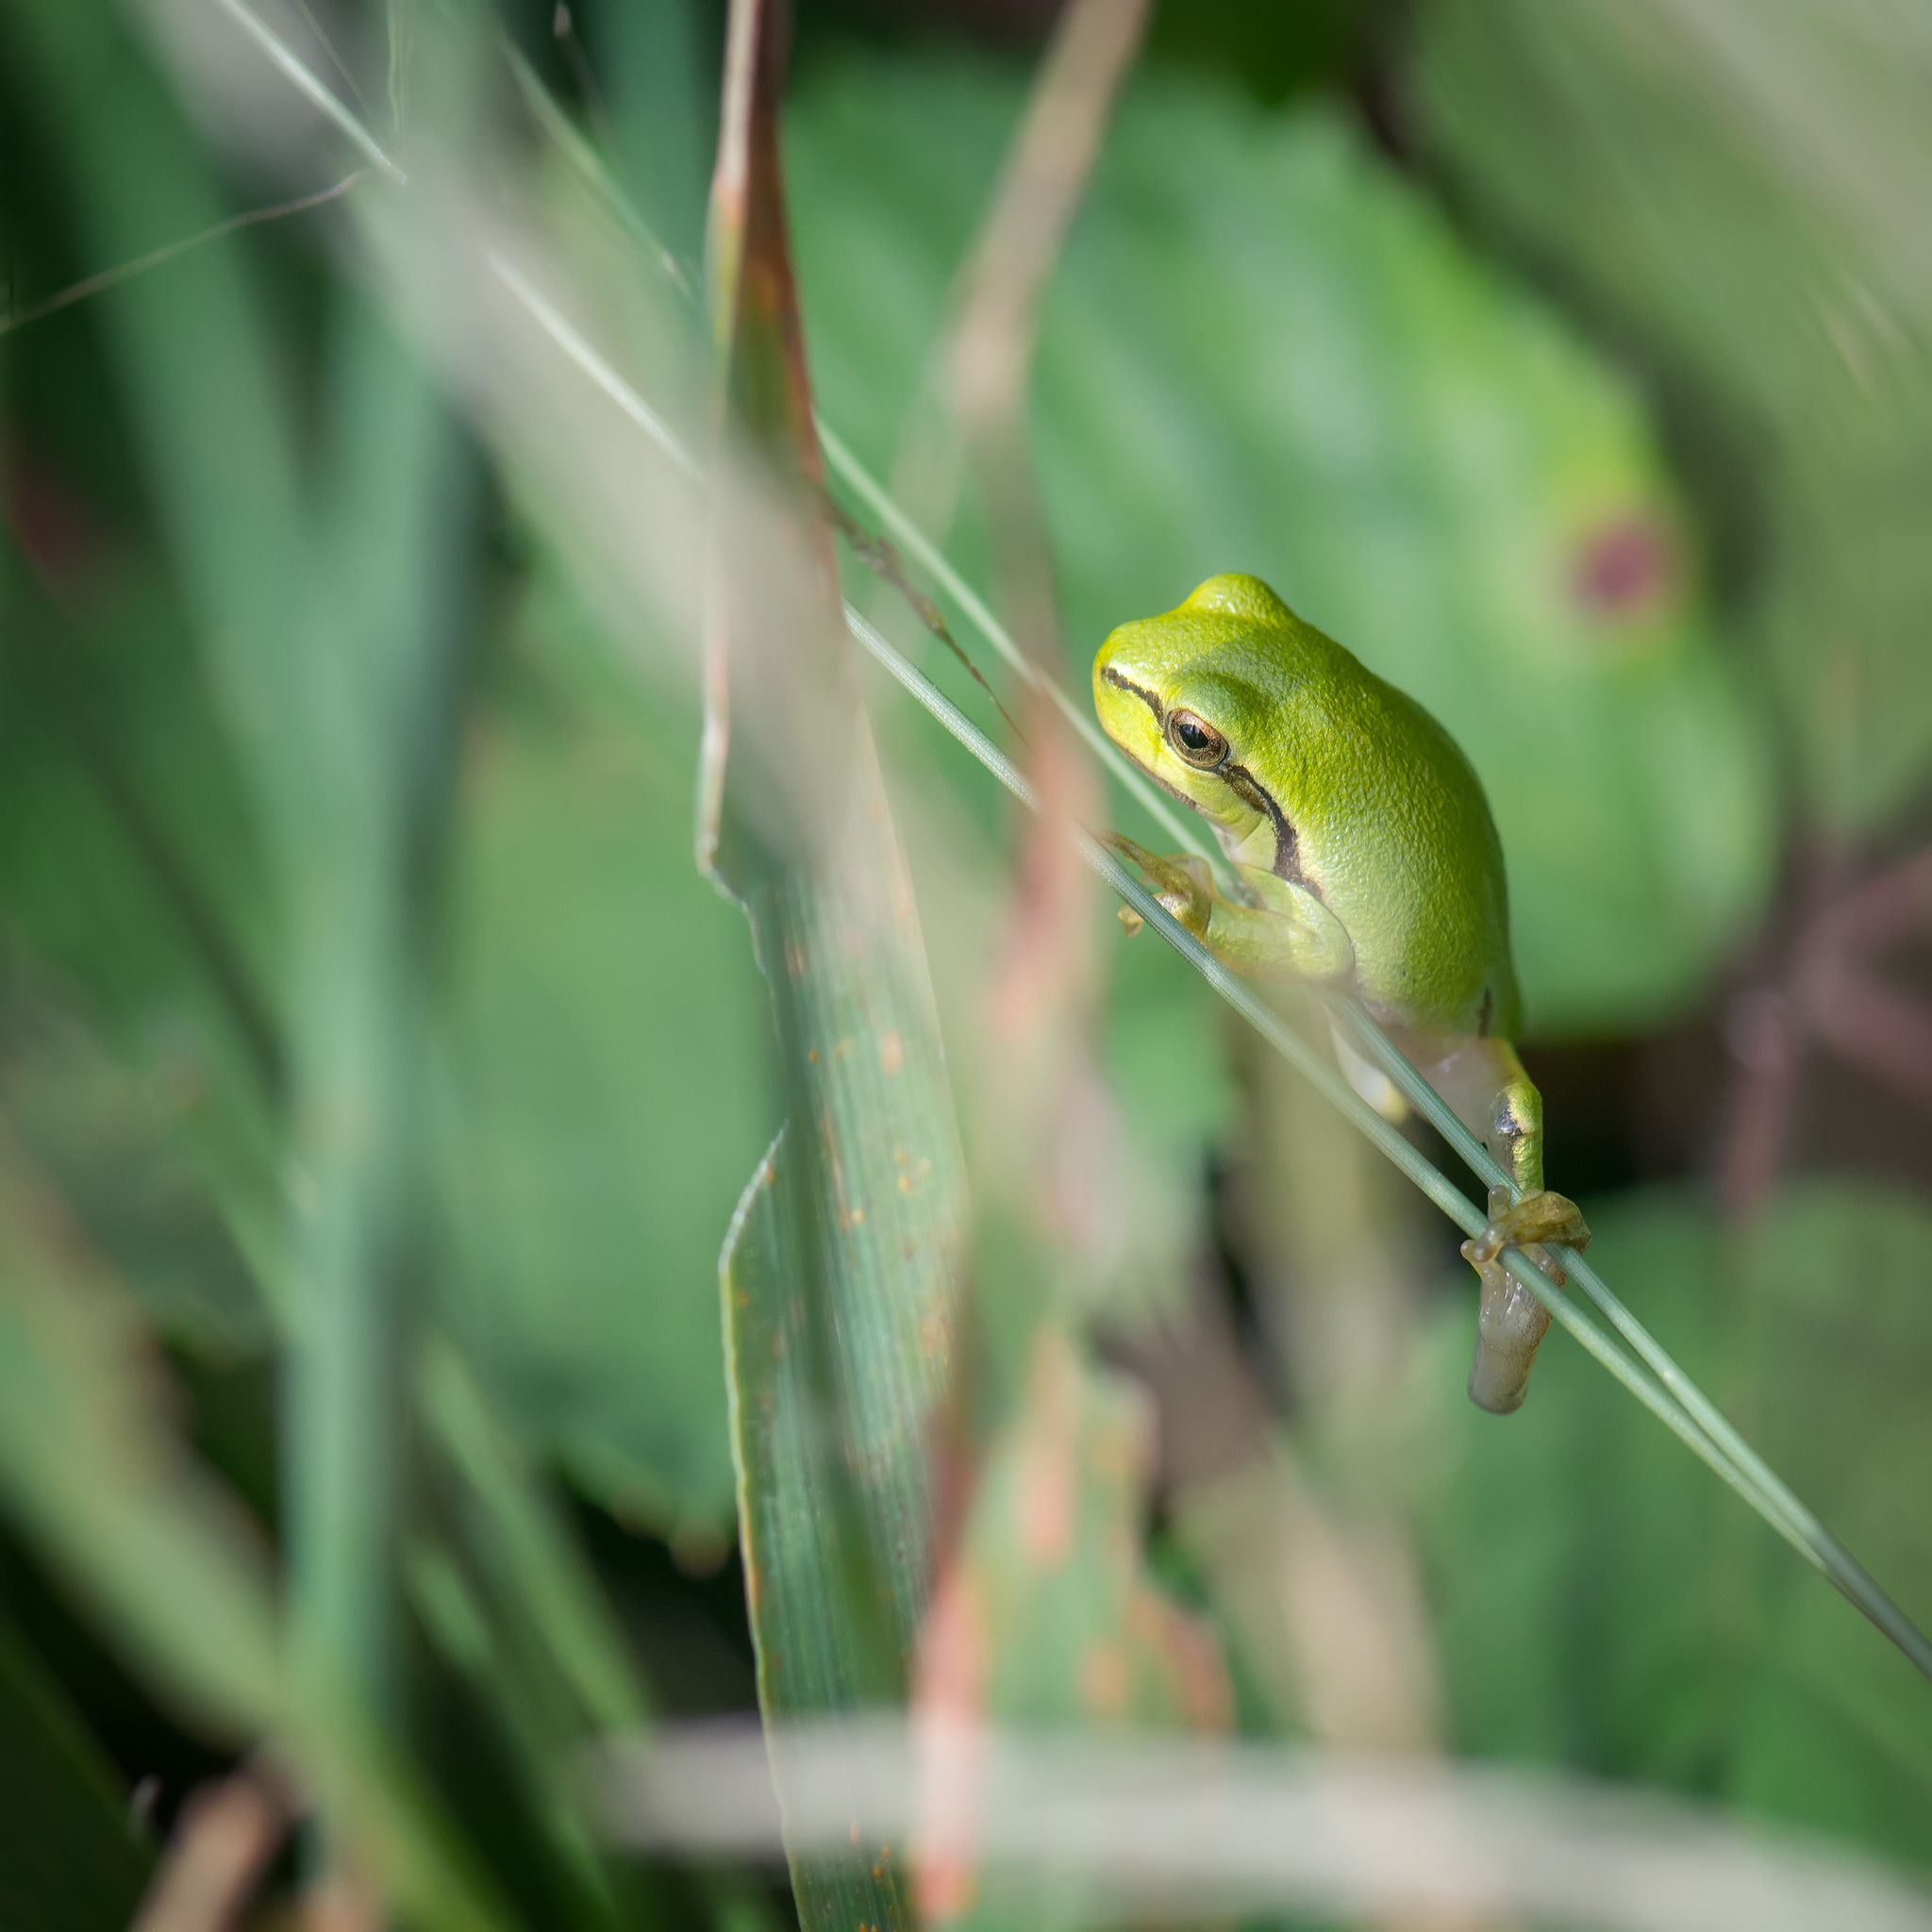 Juvenile tree frog 